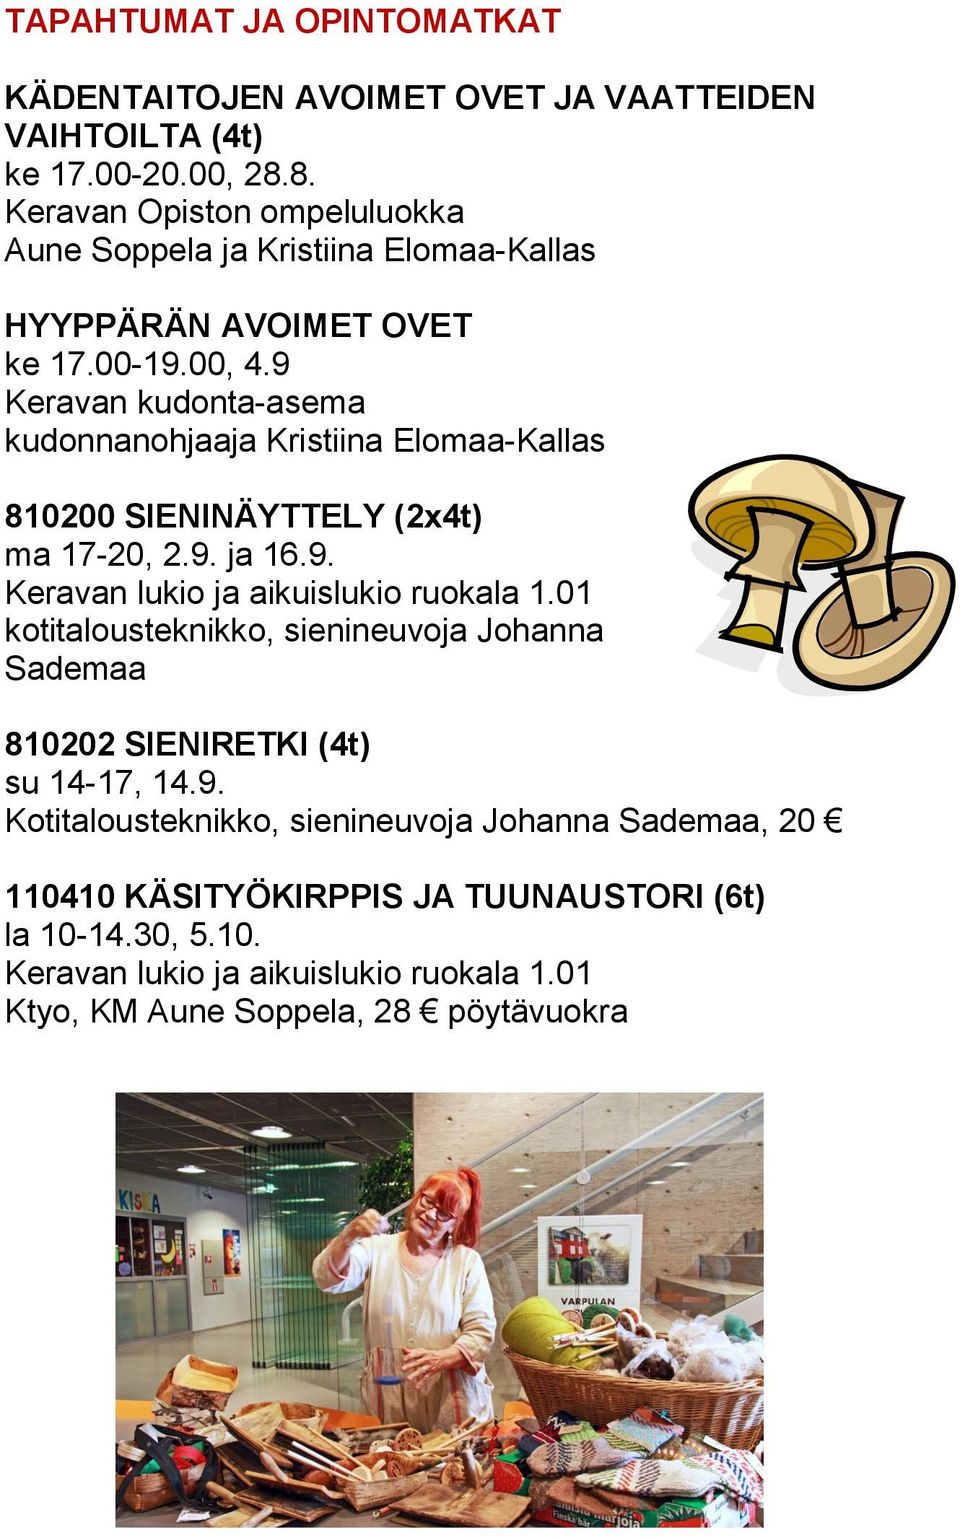 9 Keravan kudonta-asema kudonnanohjaaja Kristiina Elomaa-Kallas 810200 SIENINÄYTTELY (2x4t) ma 17-20, 2.9. ja 16.9. Keravan lukio ja aikuislukio ruokala 1.